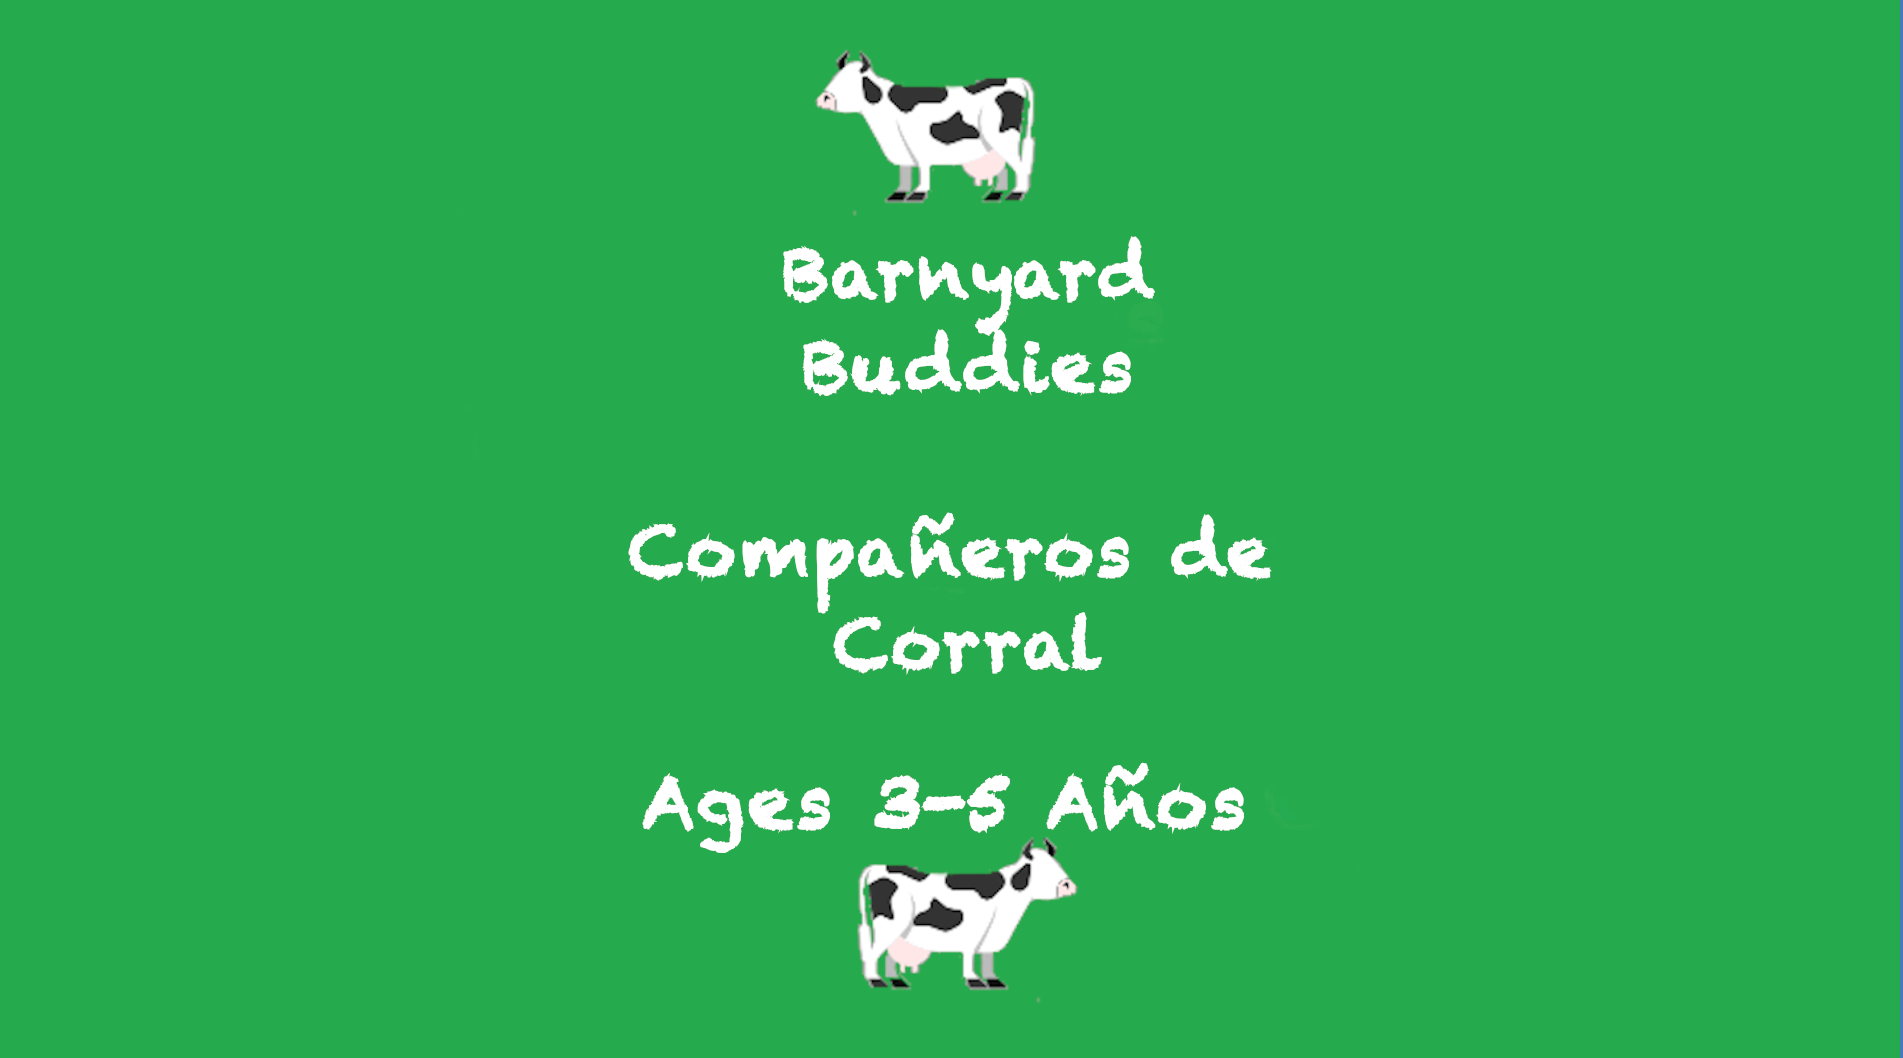 Semana 8 Tarjeta Barnyard Buddies de 3 a 5 años de edad